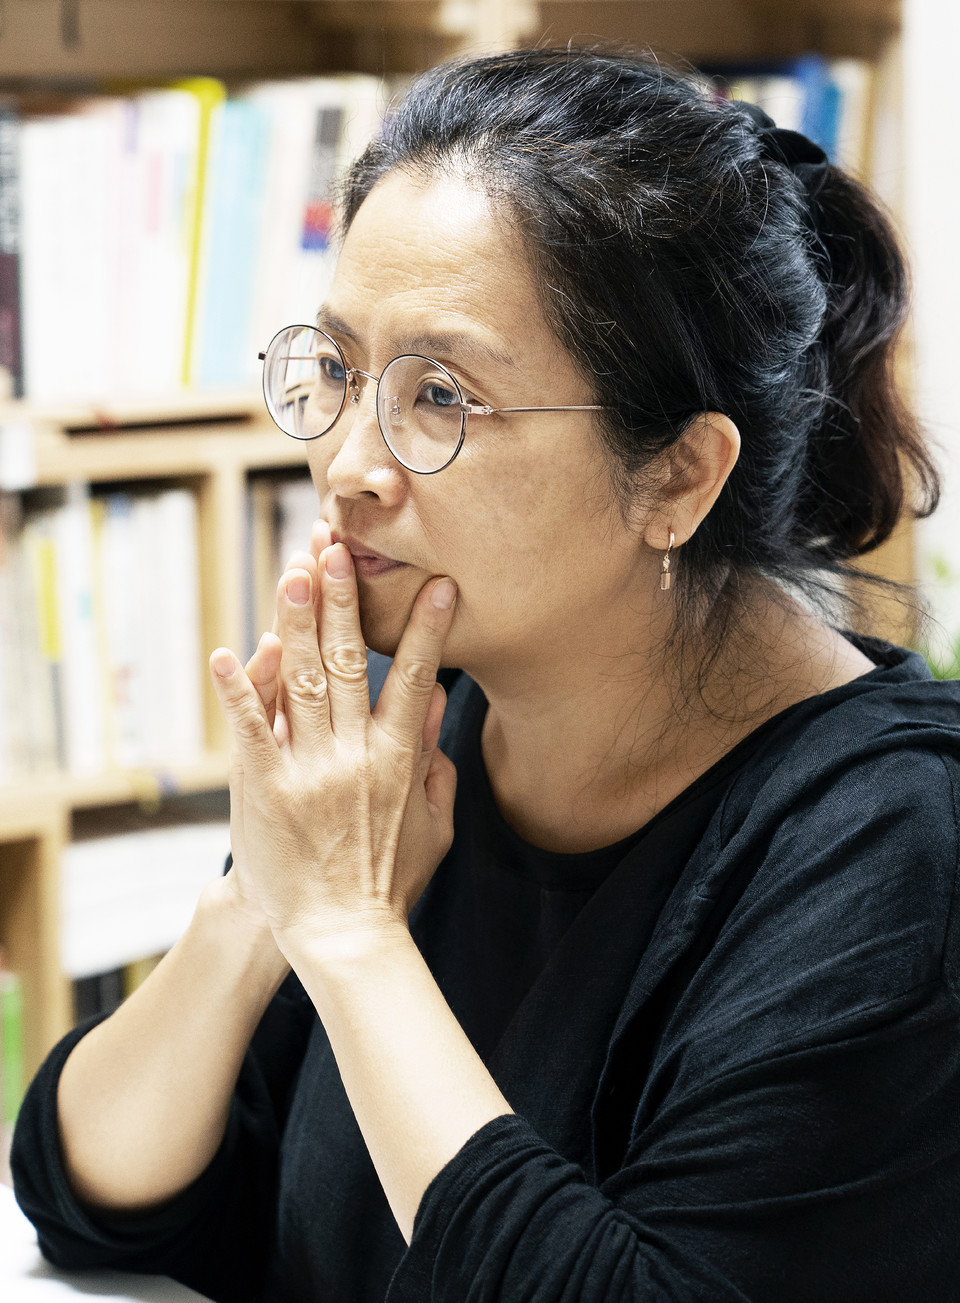 9월 2일, 임소연 활동가가 홍은전 작가와 인터뷰를 하고 있다. 사진 현다혜 